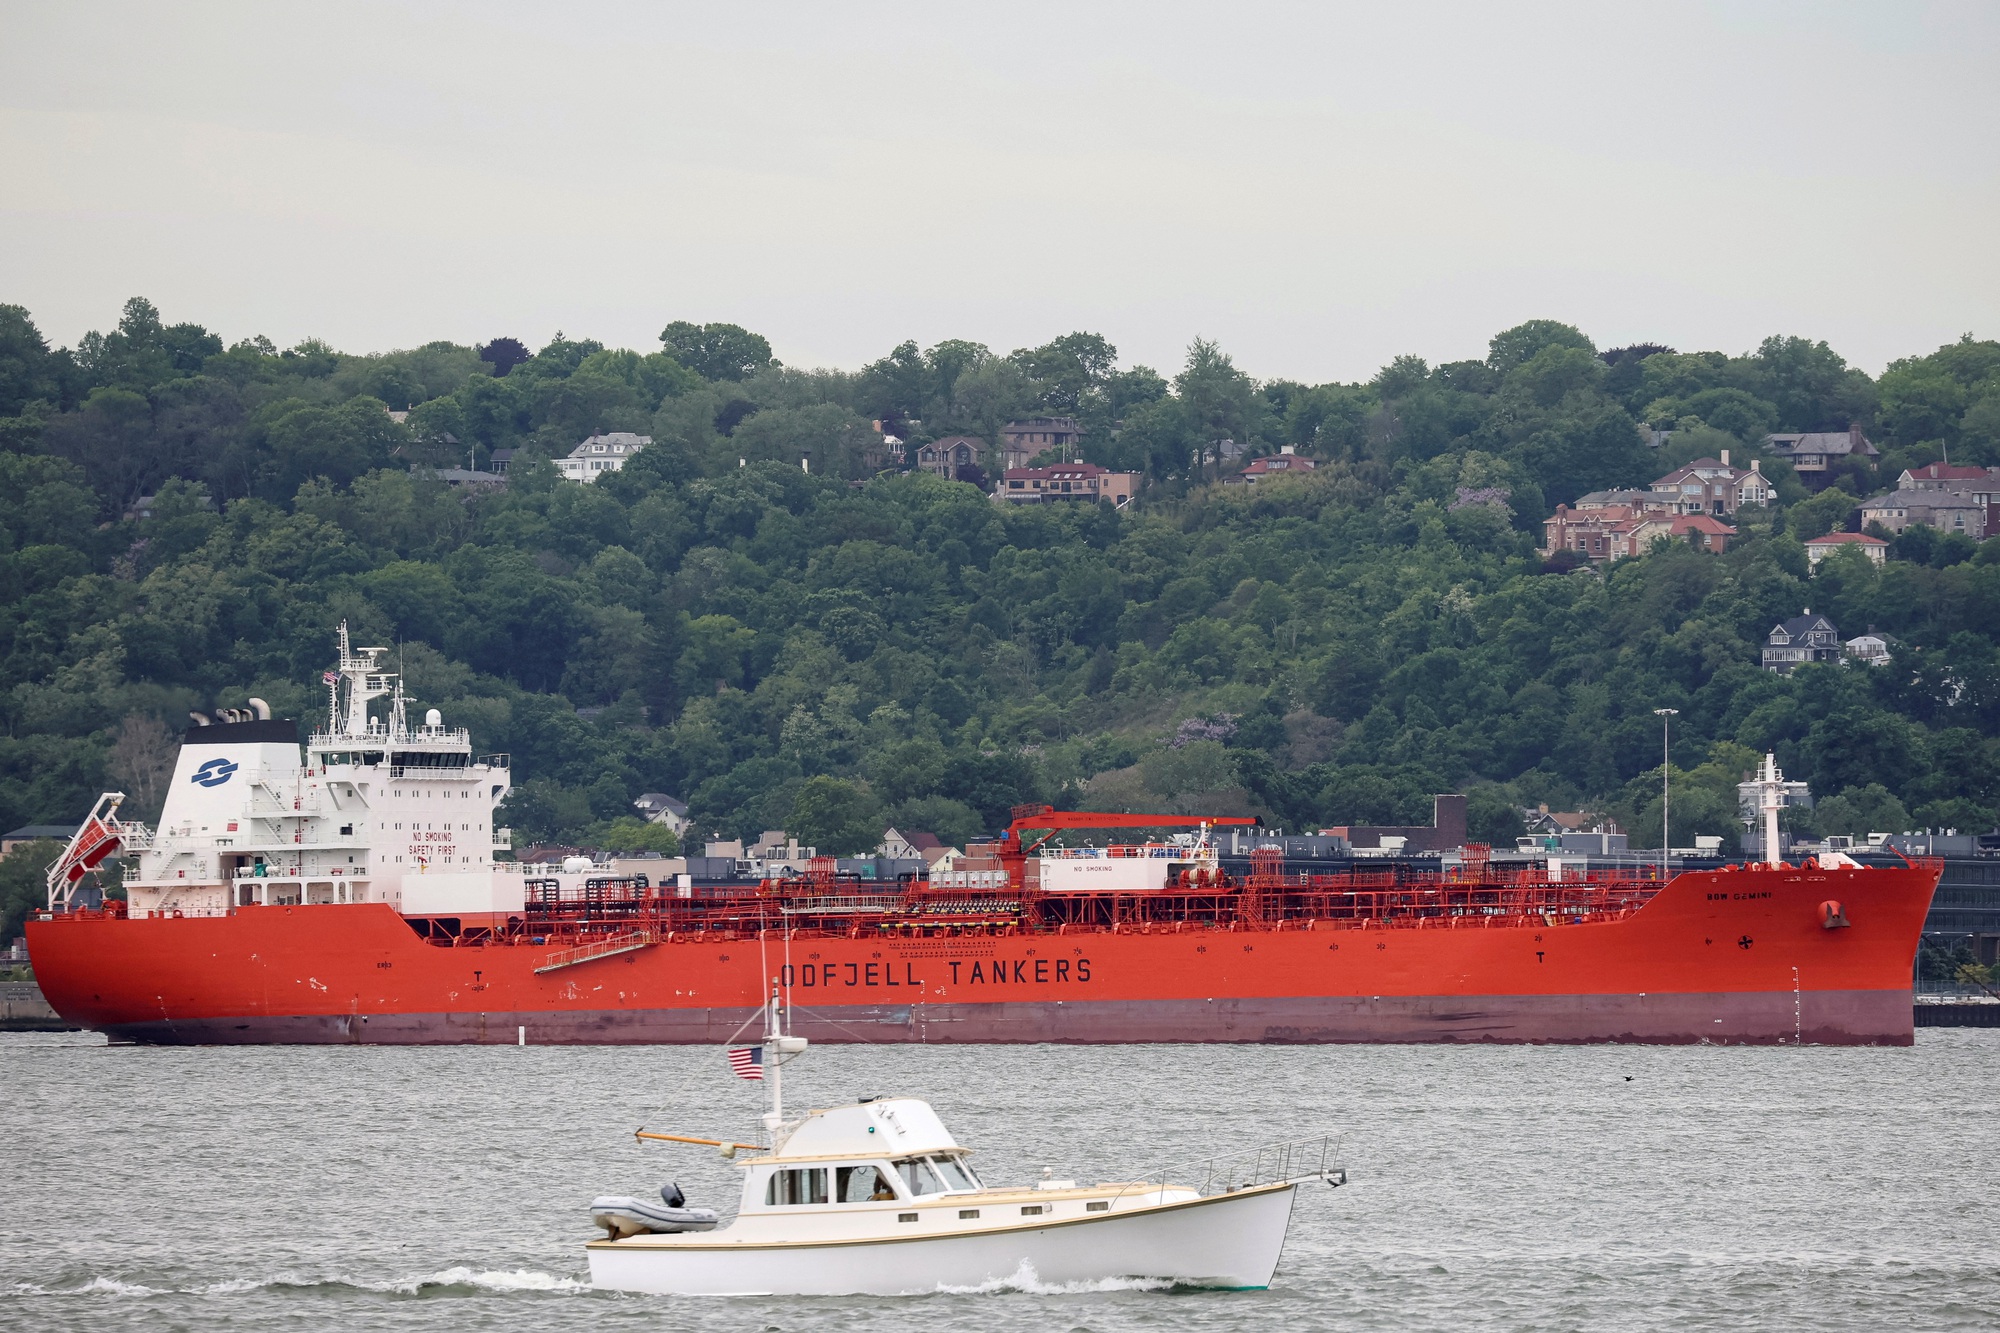 Tàu chở dầu neo đậu tại Cảng New York ở TP New York - Mỹ. Ảnh: REUTERS